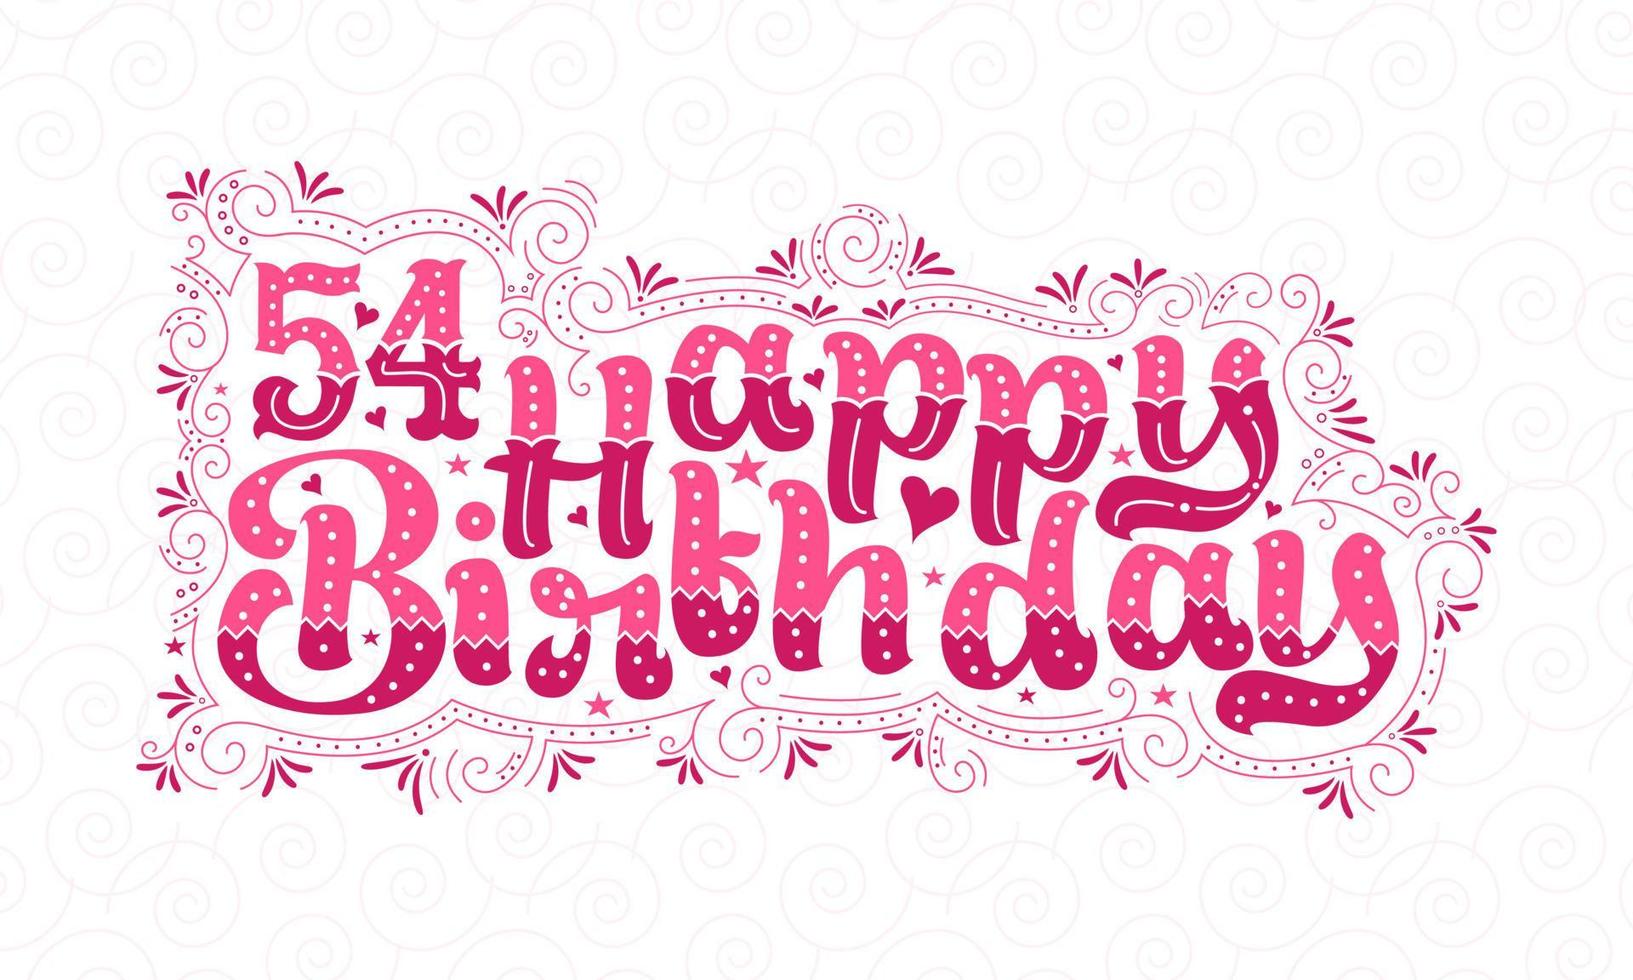 54:e Grattis på födelsedagen bokstäver, 54 års födelsedag vacker typografidesign med rosa prickar, linjer och löv. vektor